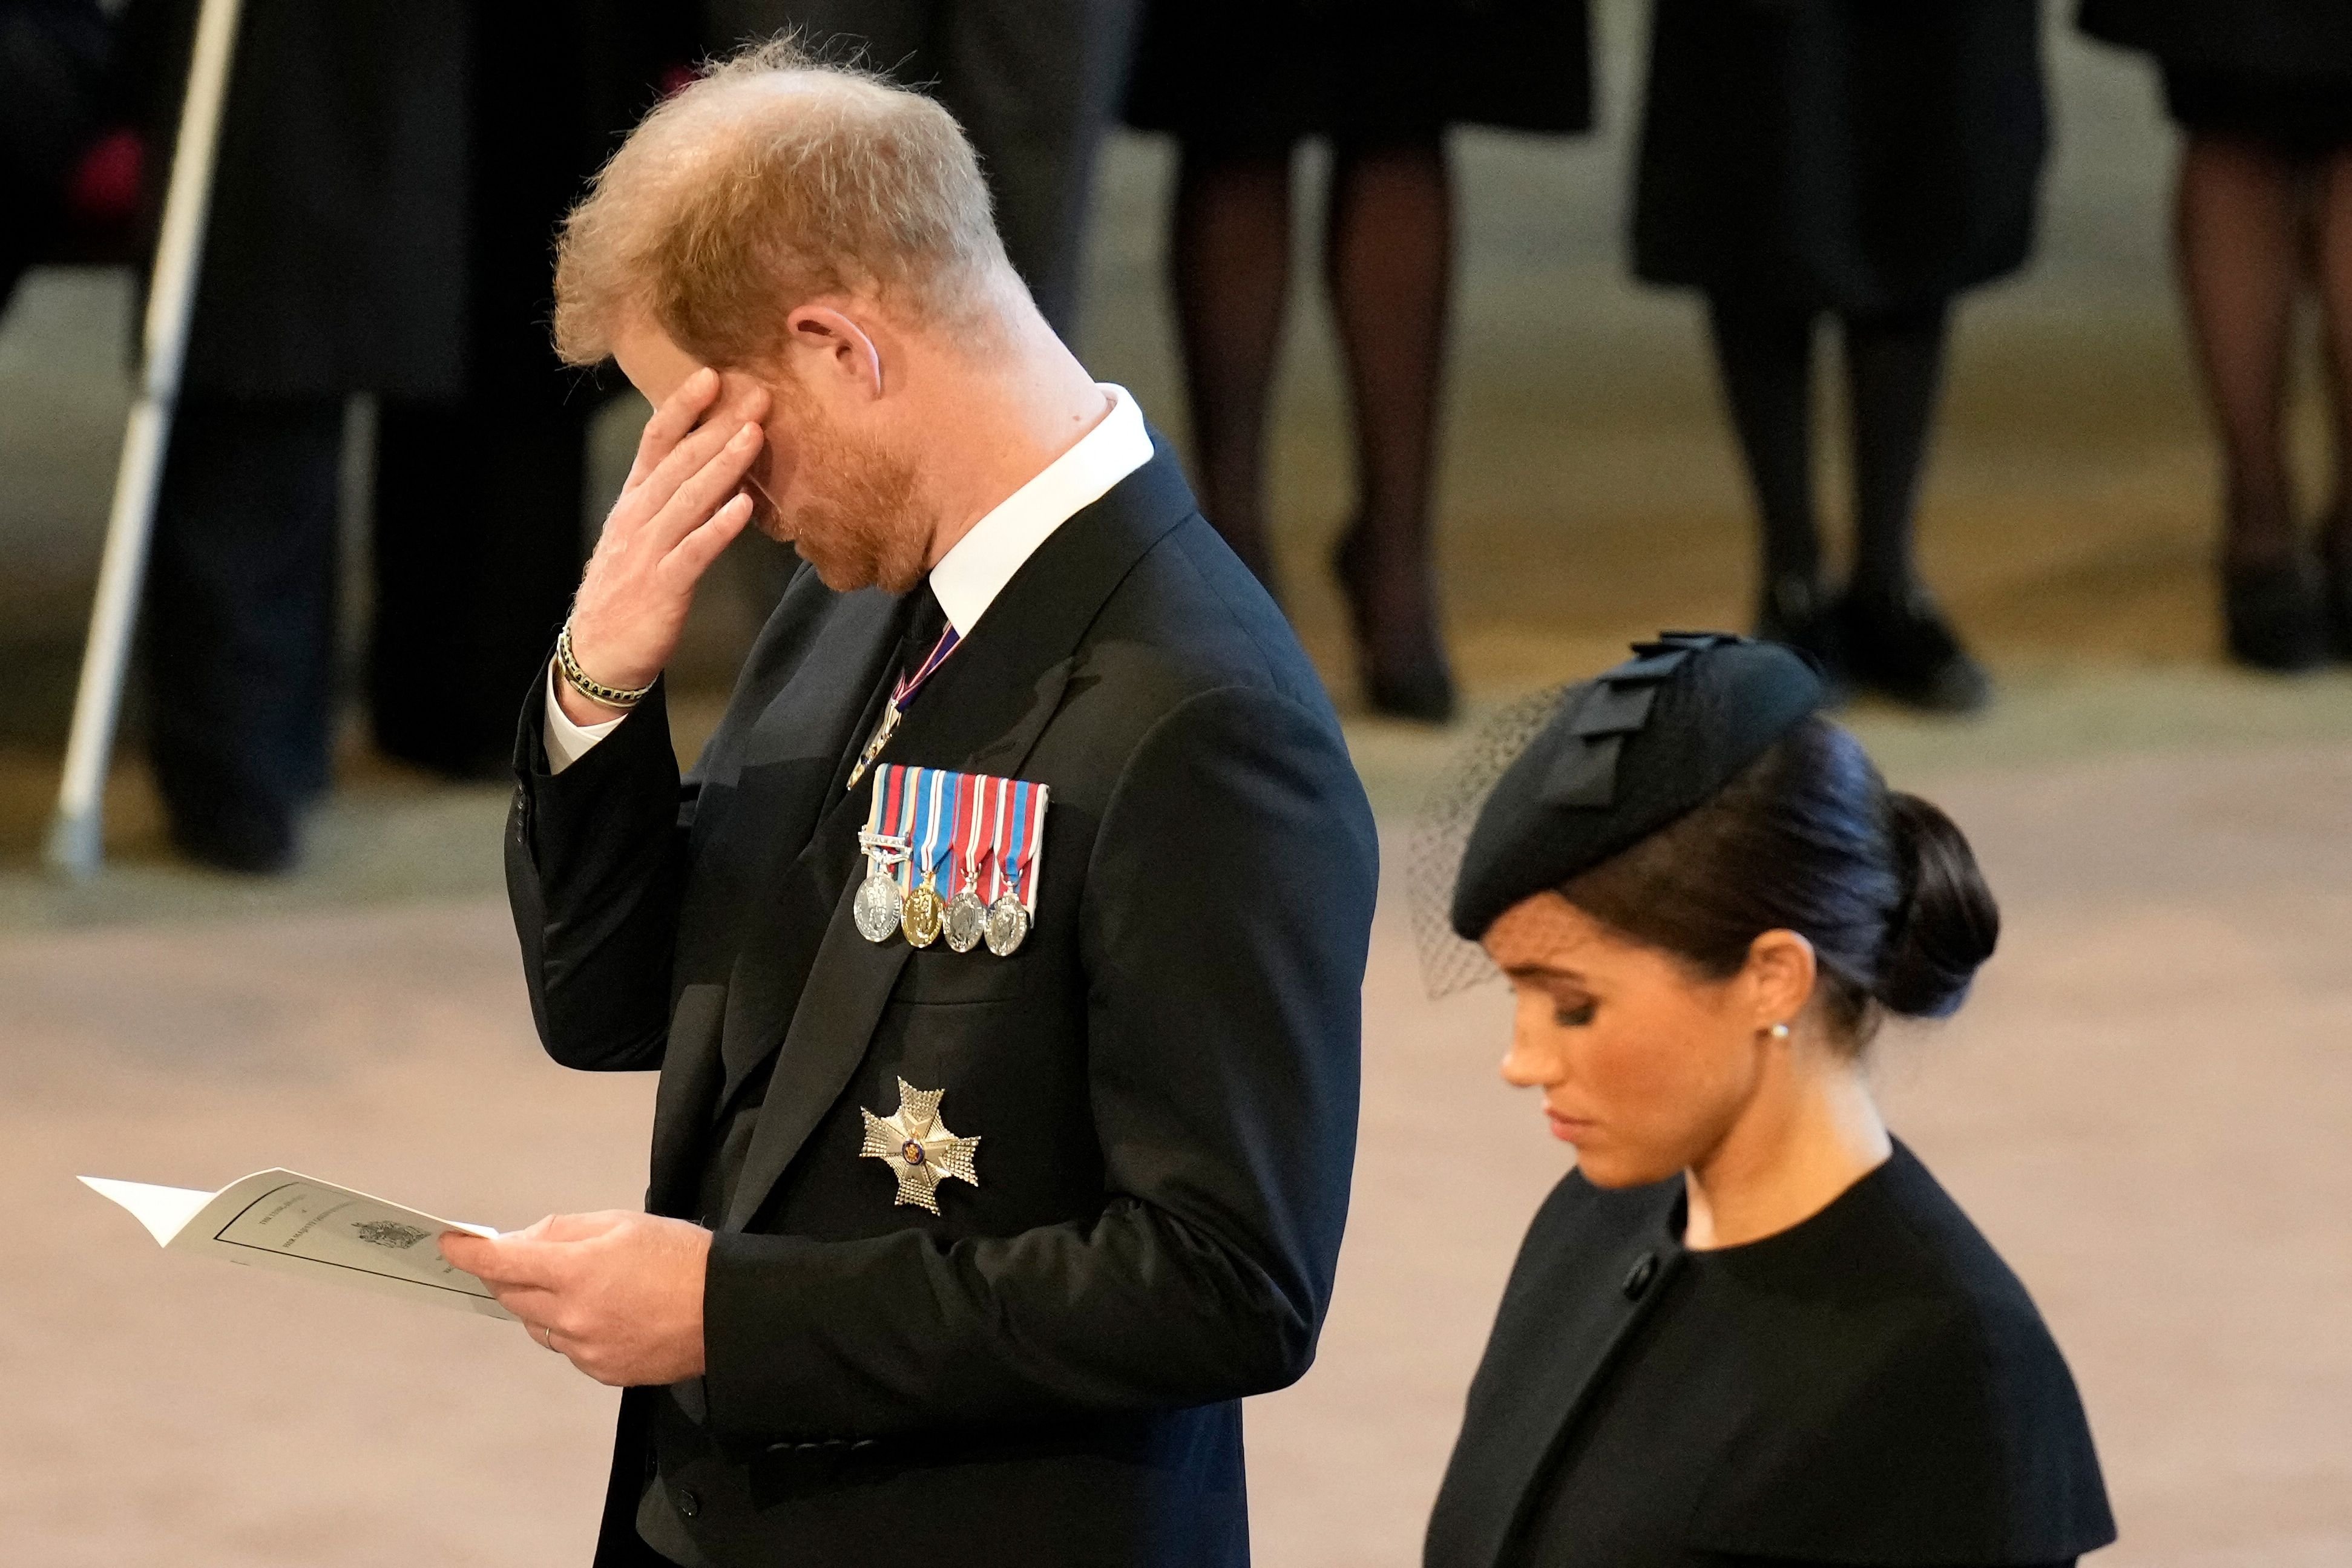 El príncipe Harry se limpia una lágrima mientras presenta sus respetos dentro de Westminster Hall en el Palacio de Westminster, donde el ataúd de la reina Elizabeth II reposará en un catafalco, en Londres el 14 de septiembre de 2022 | Foto: Getty Images